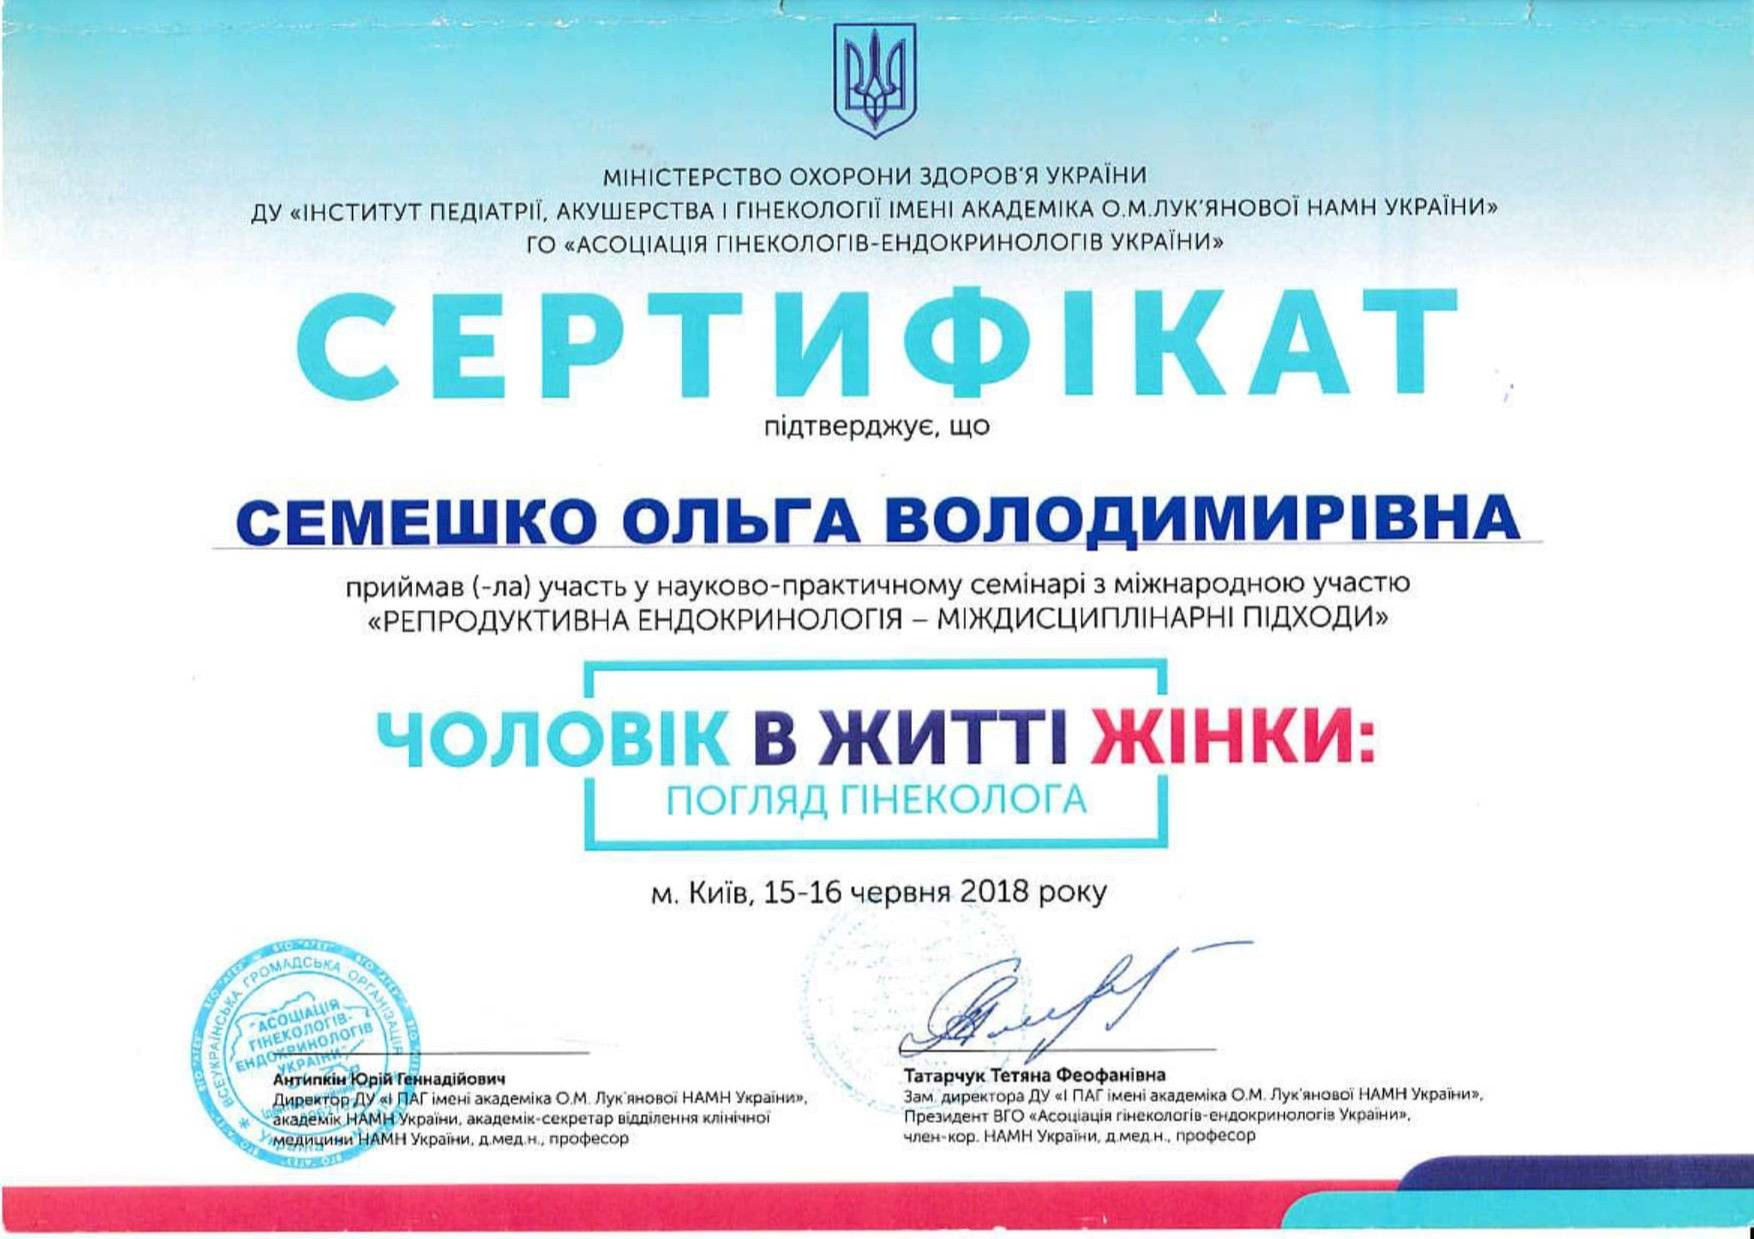 Сертификат об участии в научно-практическом семинаре с международным участием